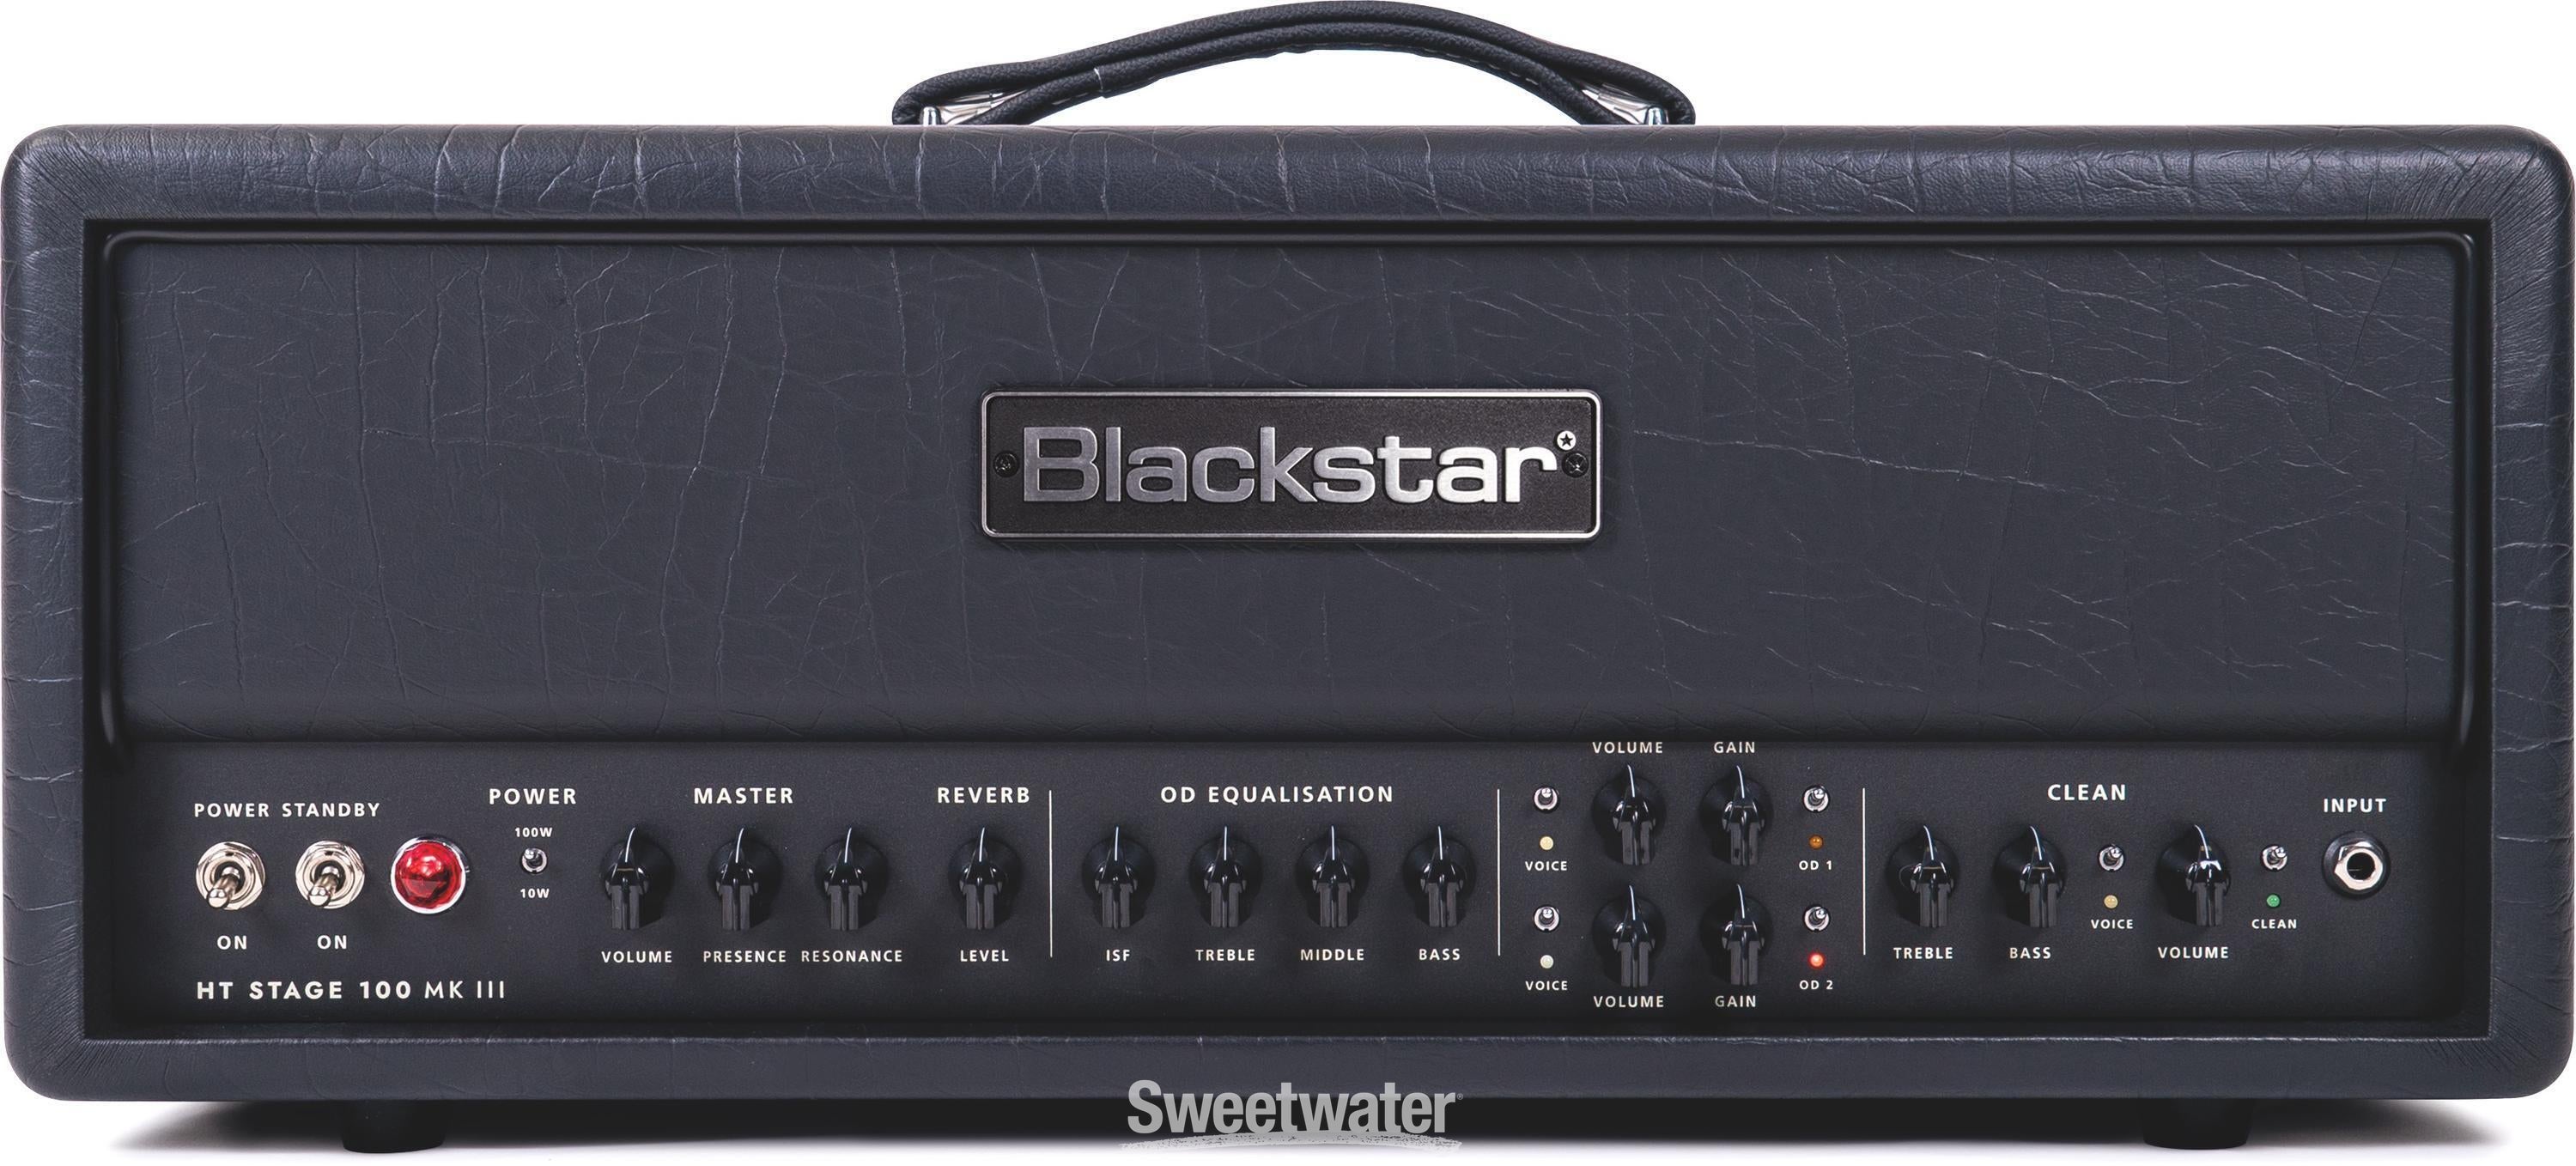 Blackstar HT Stage 100 MK III 100-watt Tube Amplifier Head